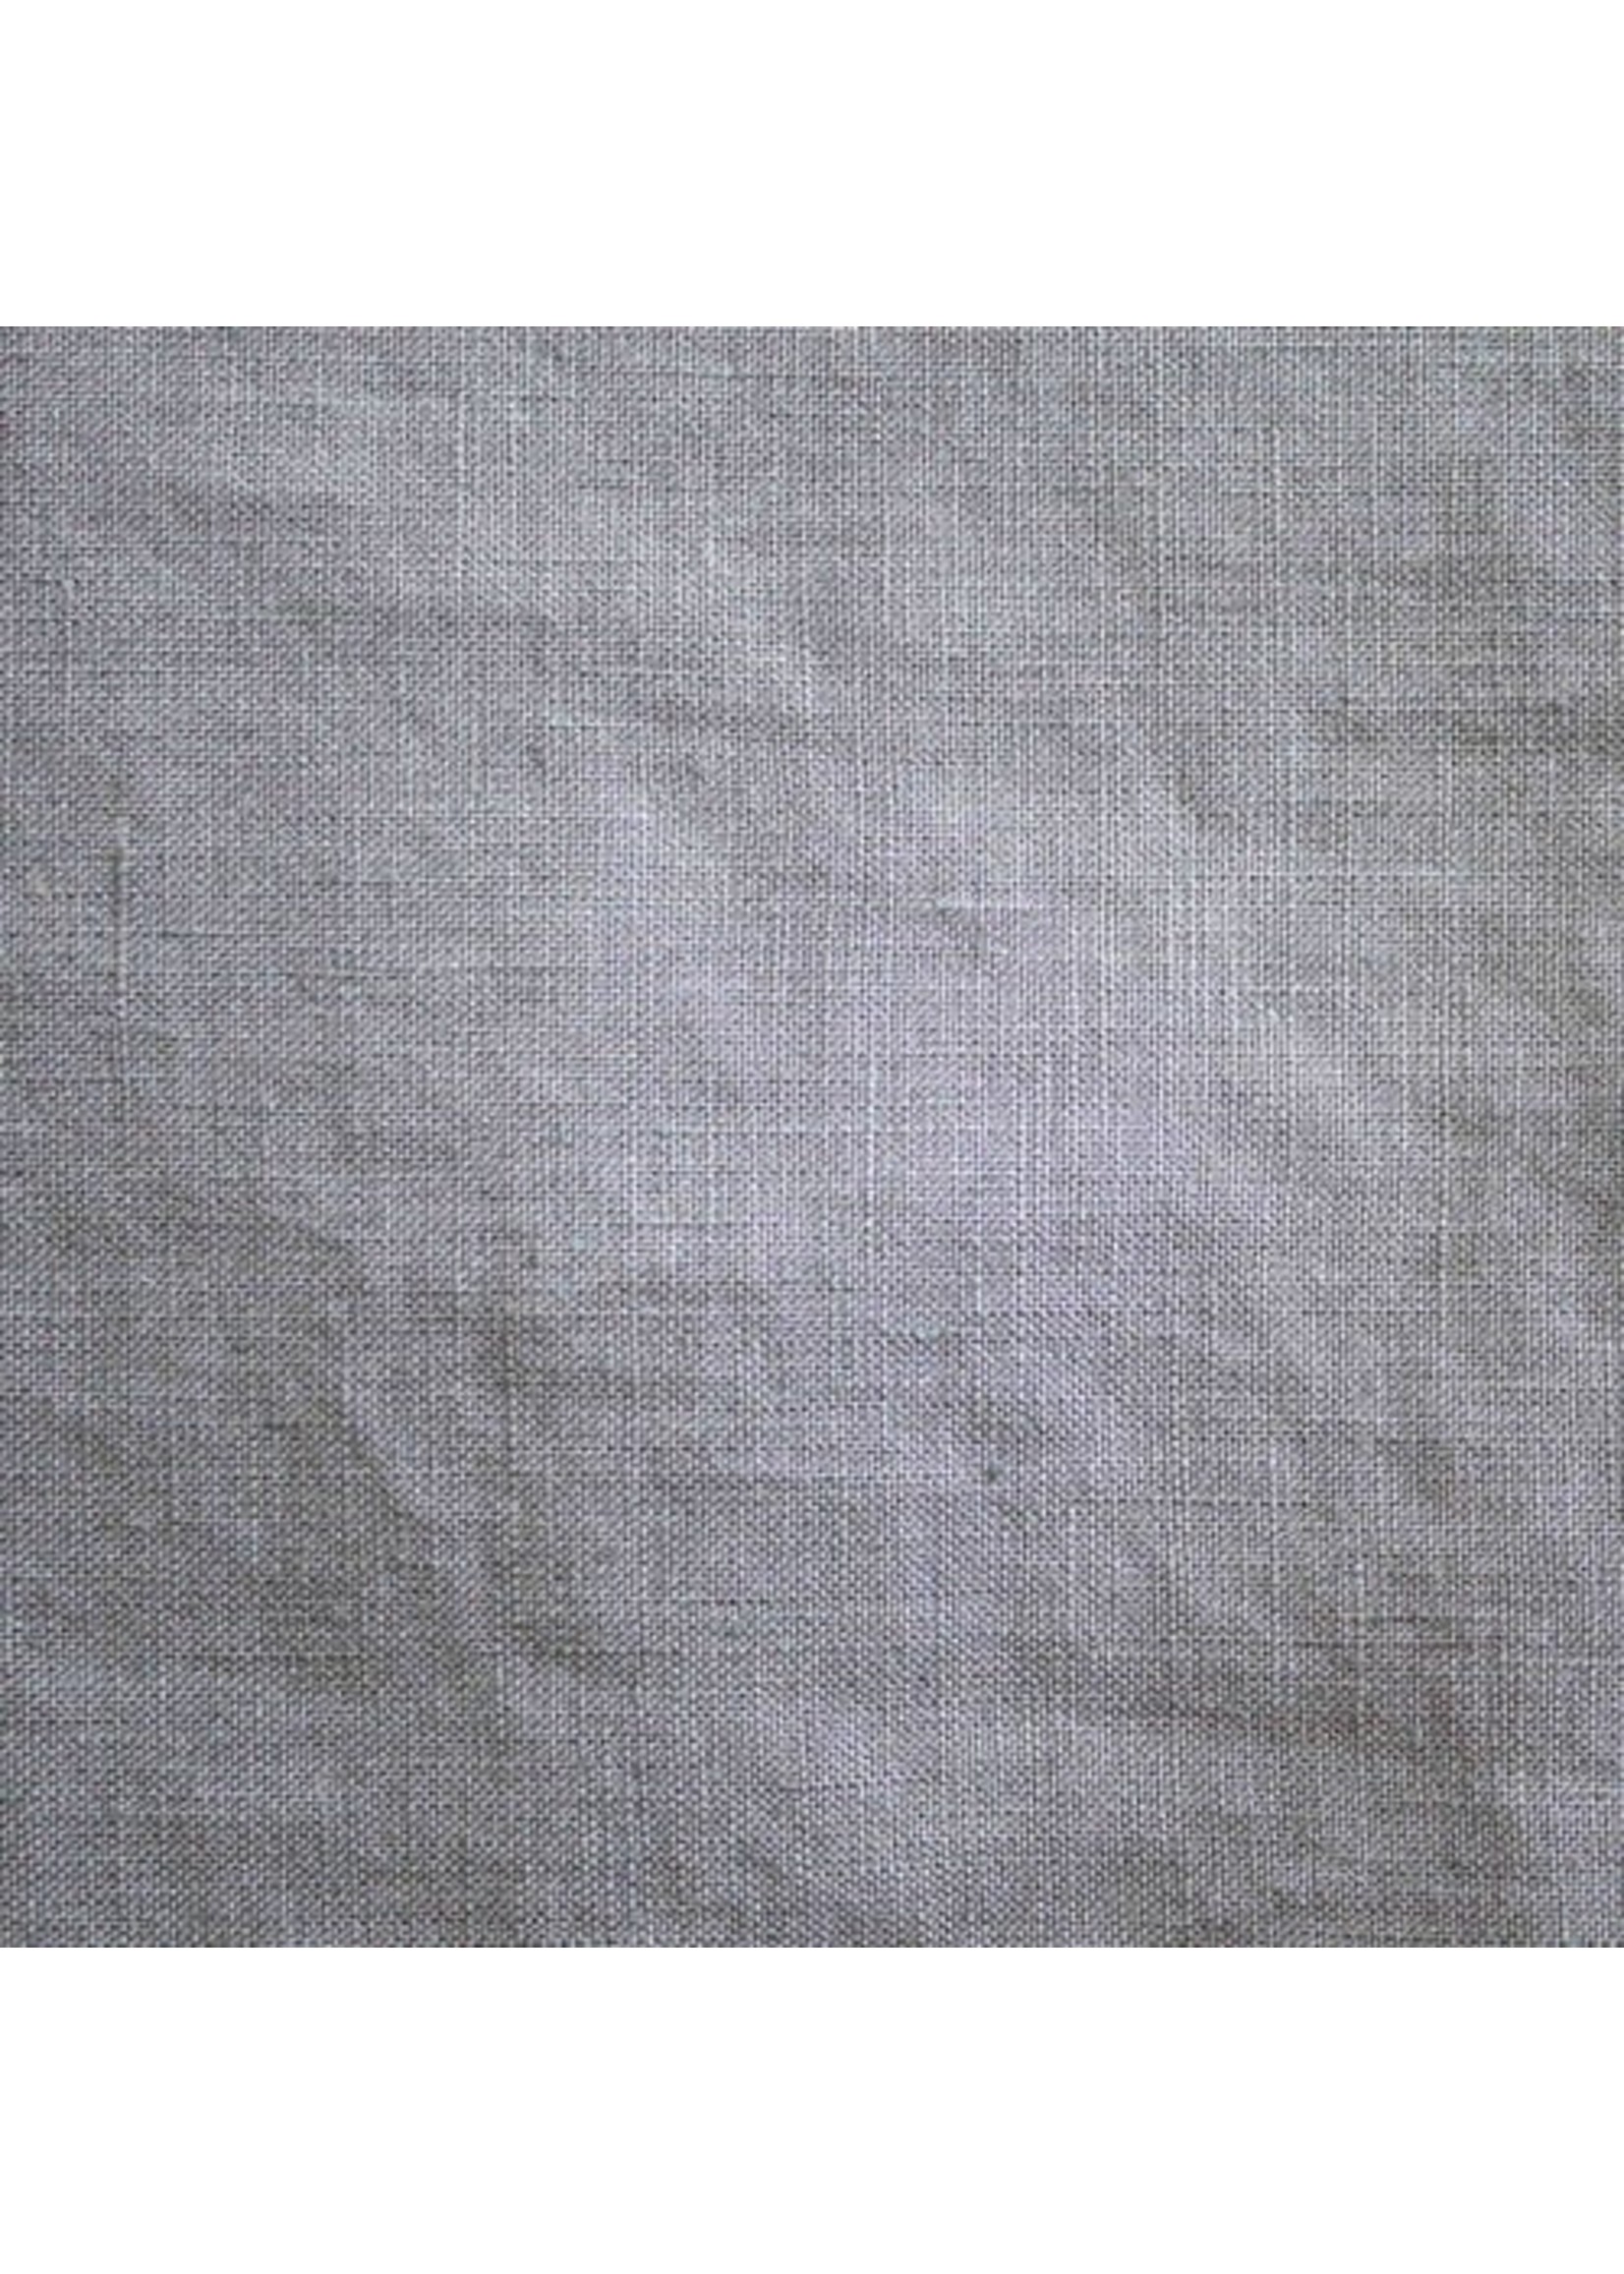 Ann Gish Ann Gish Linen Sheet Set, Natural, Queen